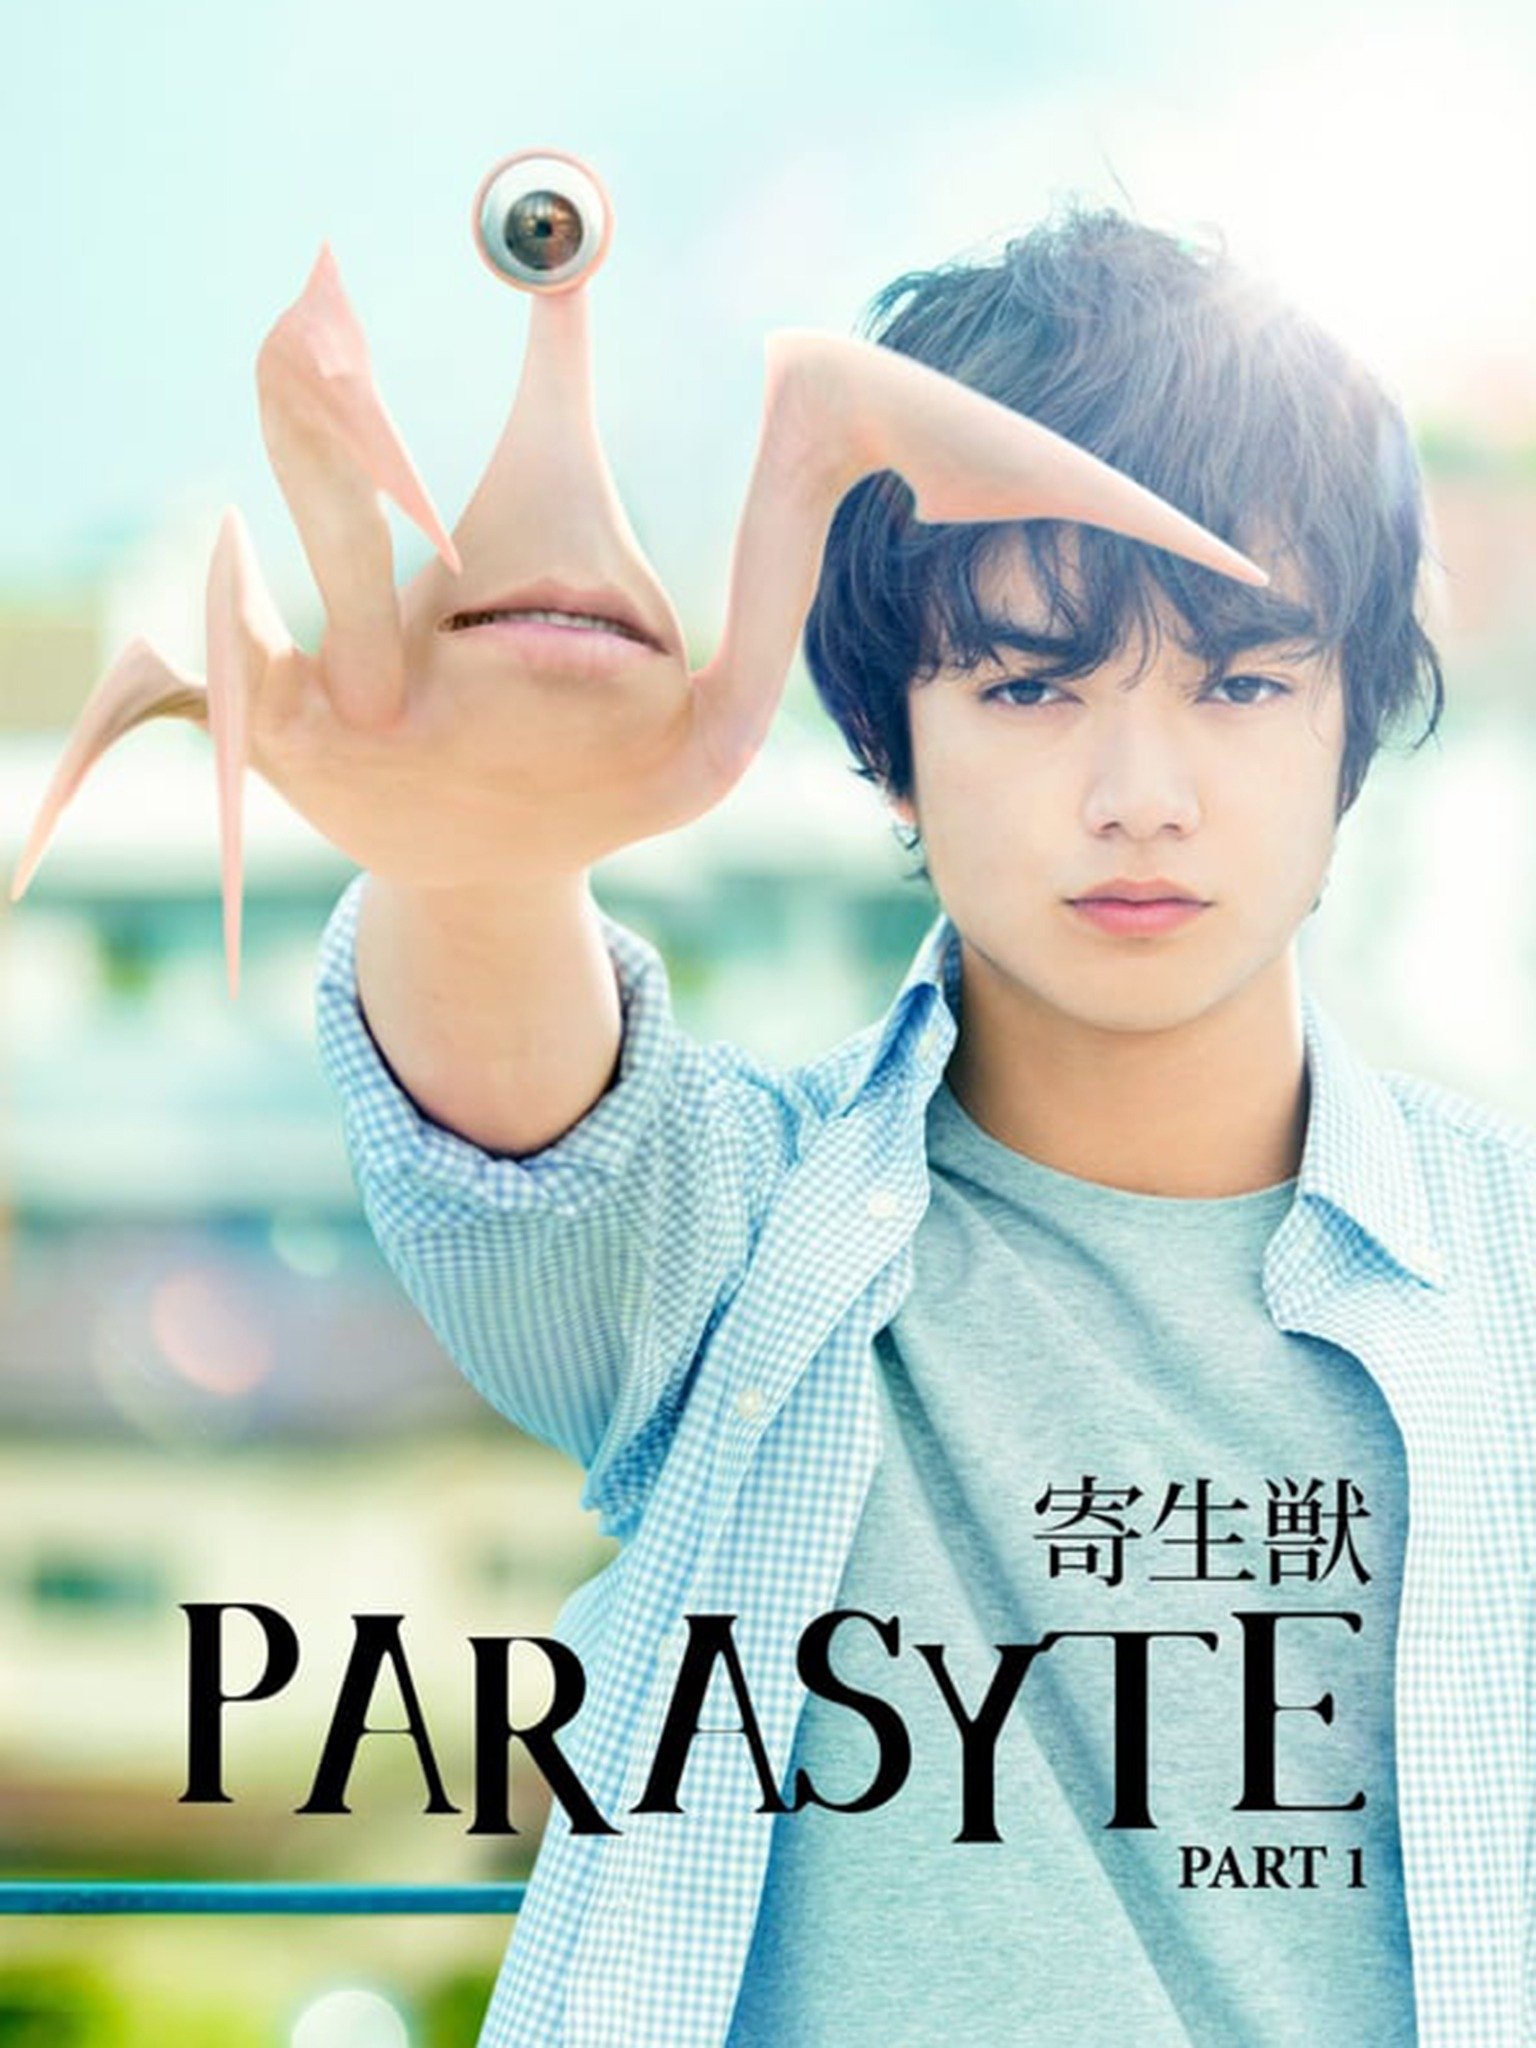 Parasyte -the maxim- – Anime Review | Nefarious Reviews